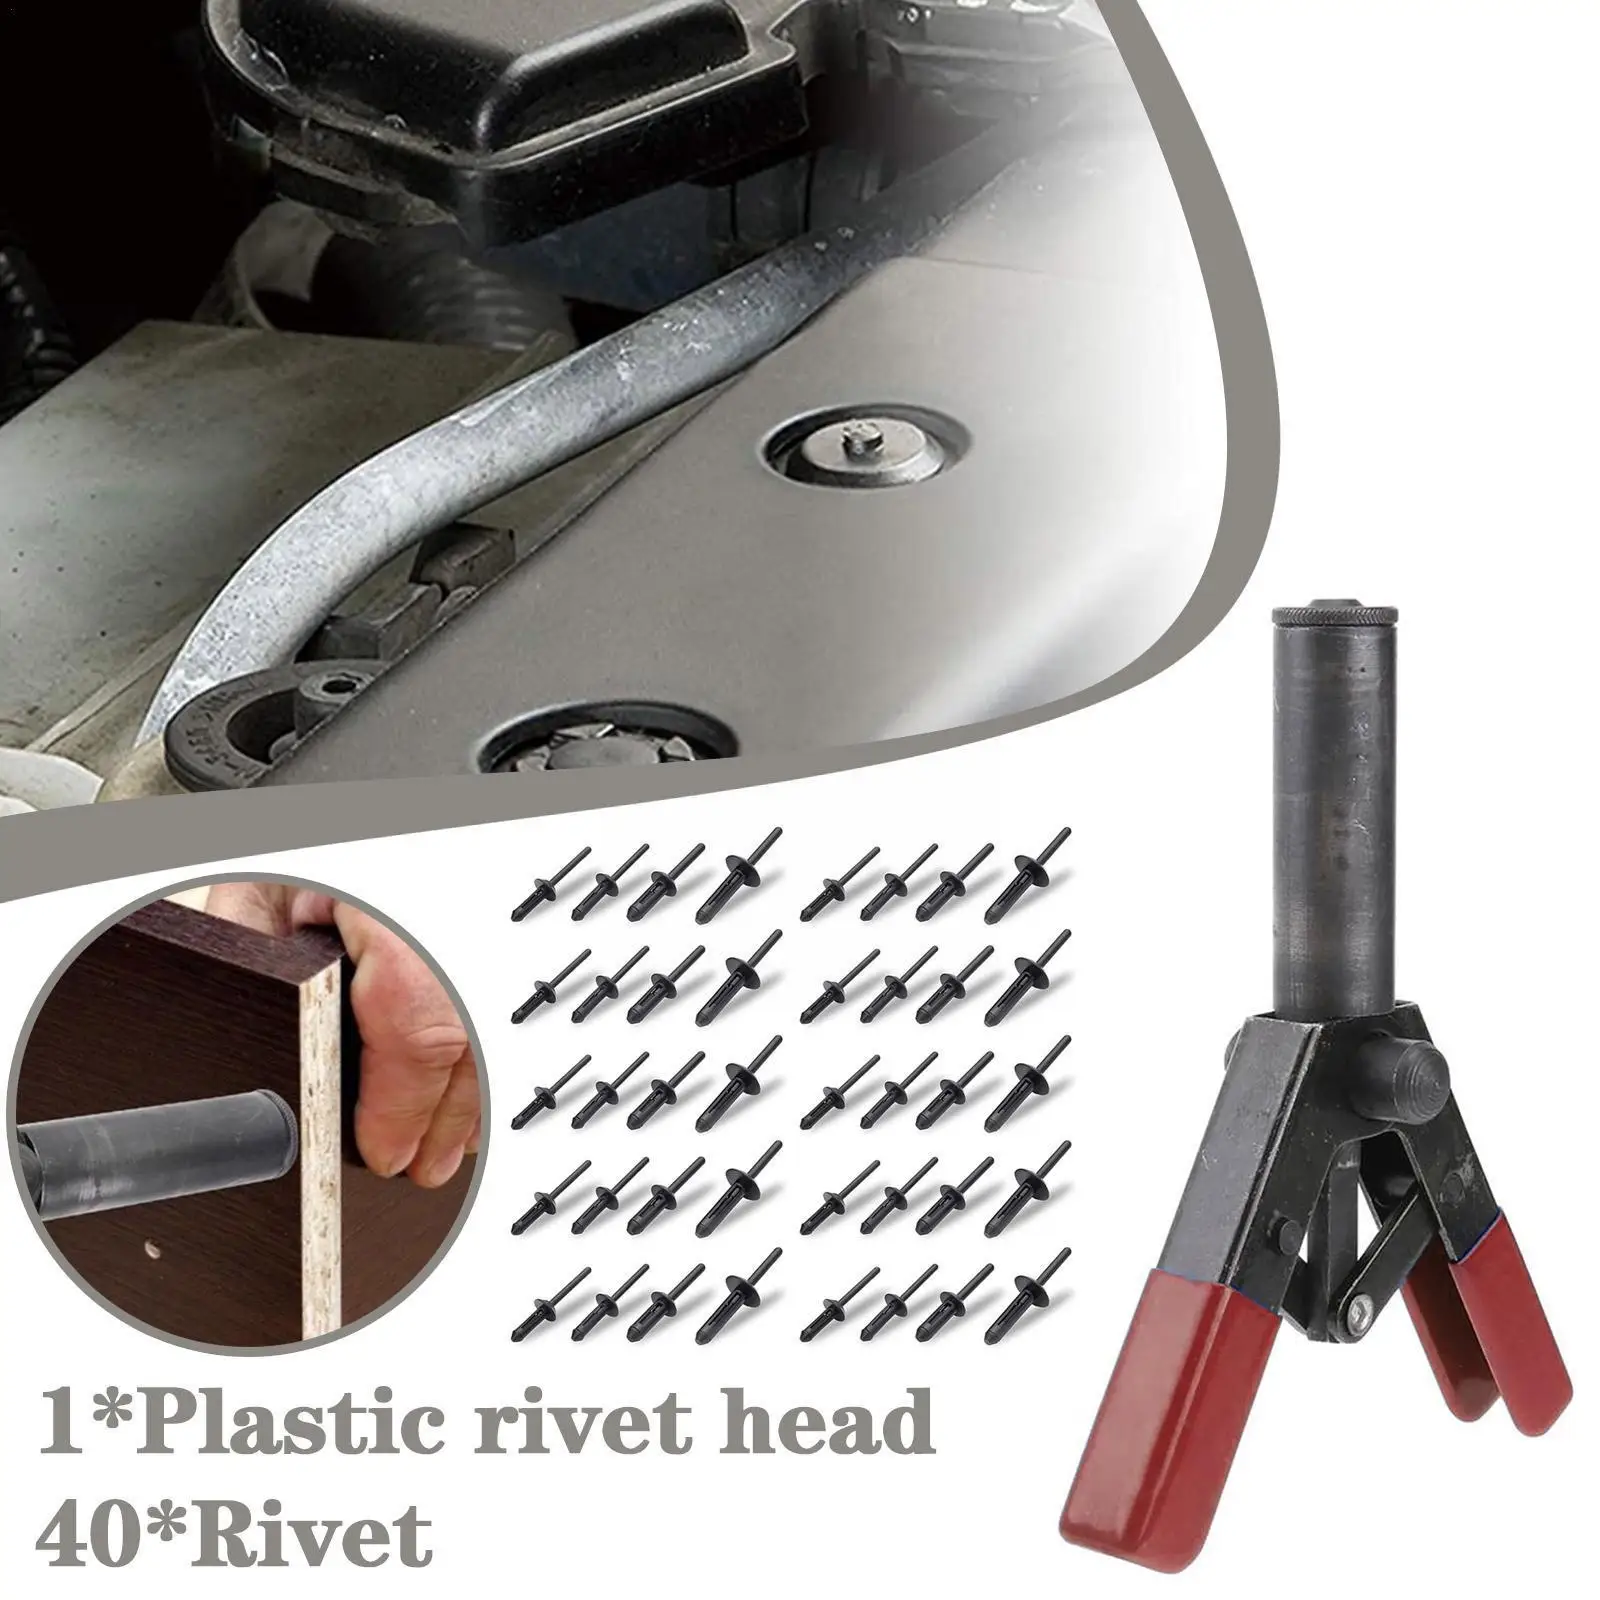 Plastic Nit Arma 6.3 Inch Poli Parte Riveter Kit Pentru Fixare Panouri Usi & Tapiterie Auto Cu 40 De Piese Din Plastic Pom E7d4